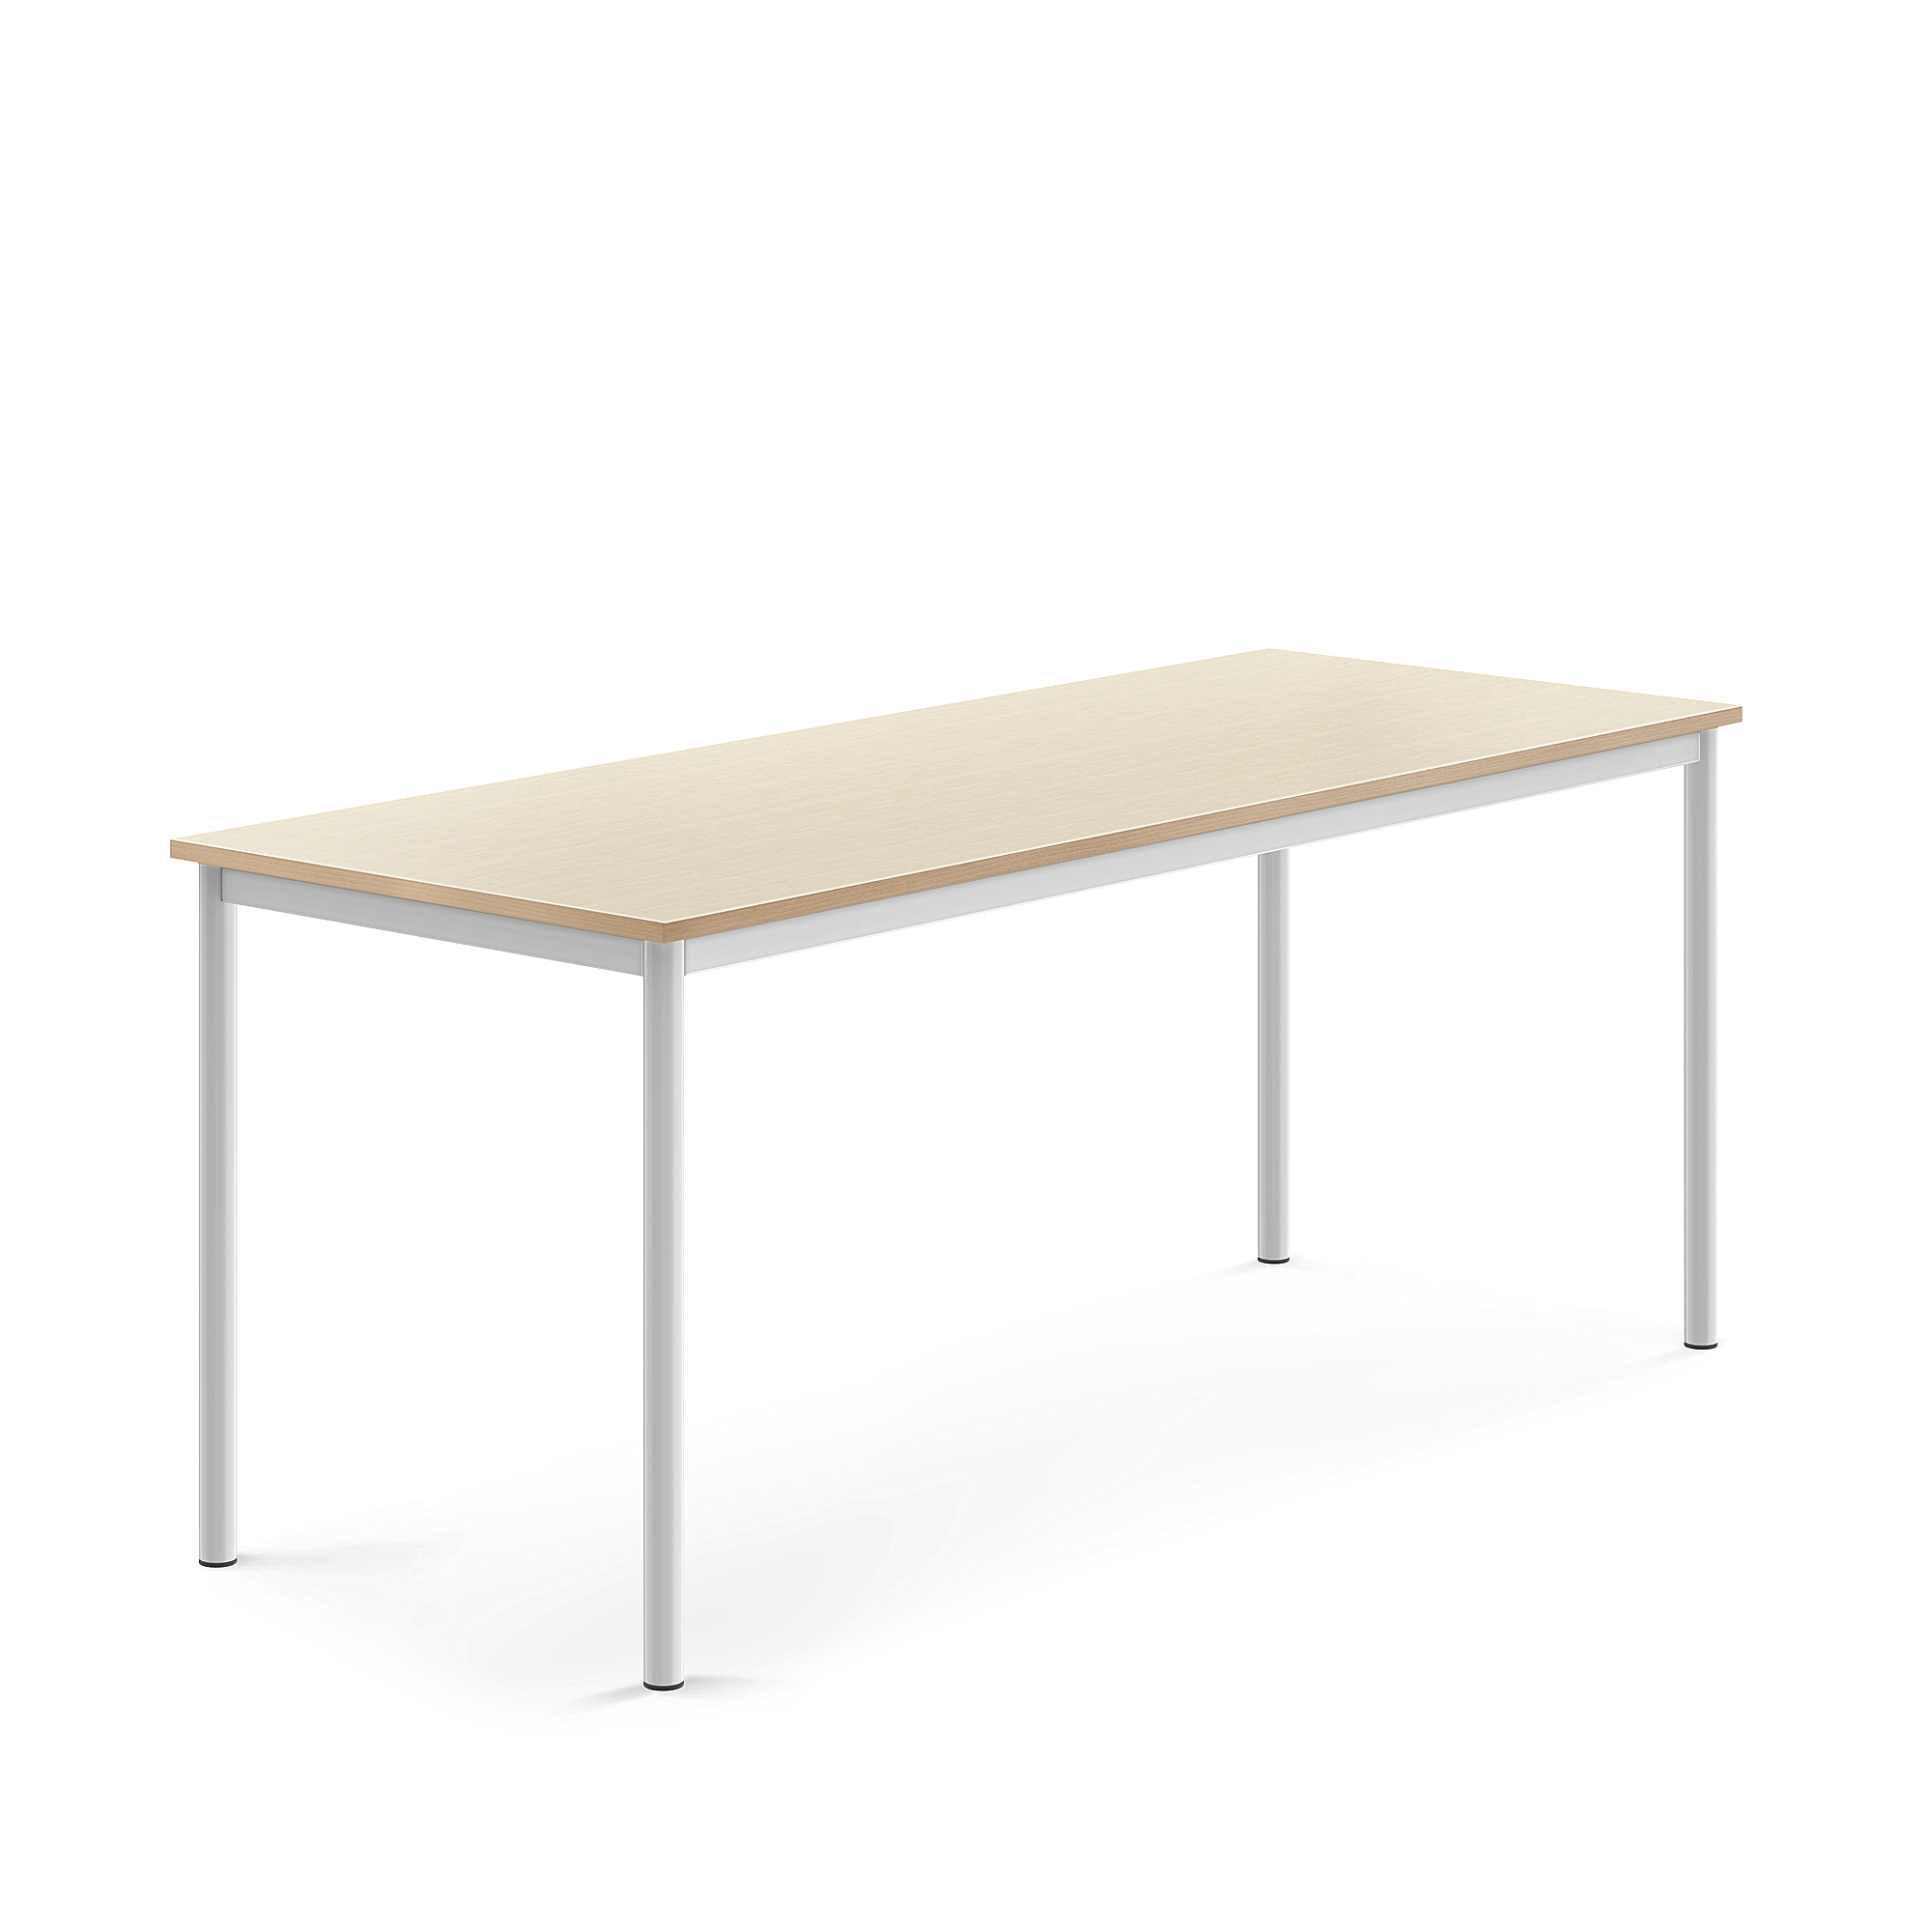 Stůl SONITUS, 1800x700x720 mm, bílé nohy, HPL deska tlumící hluk, bříza